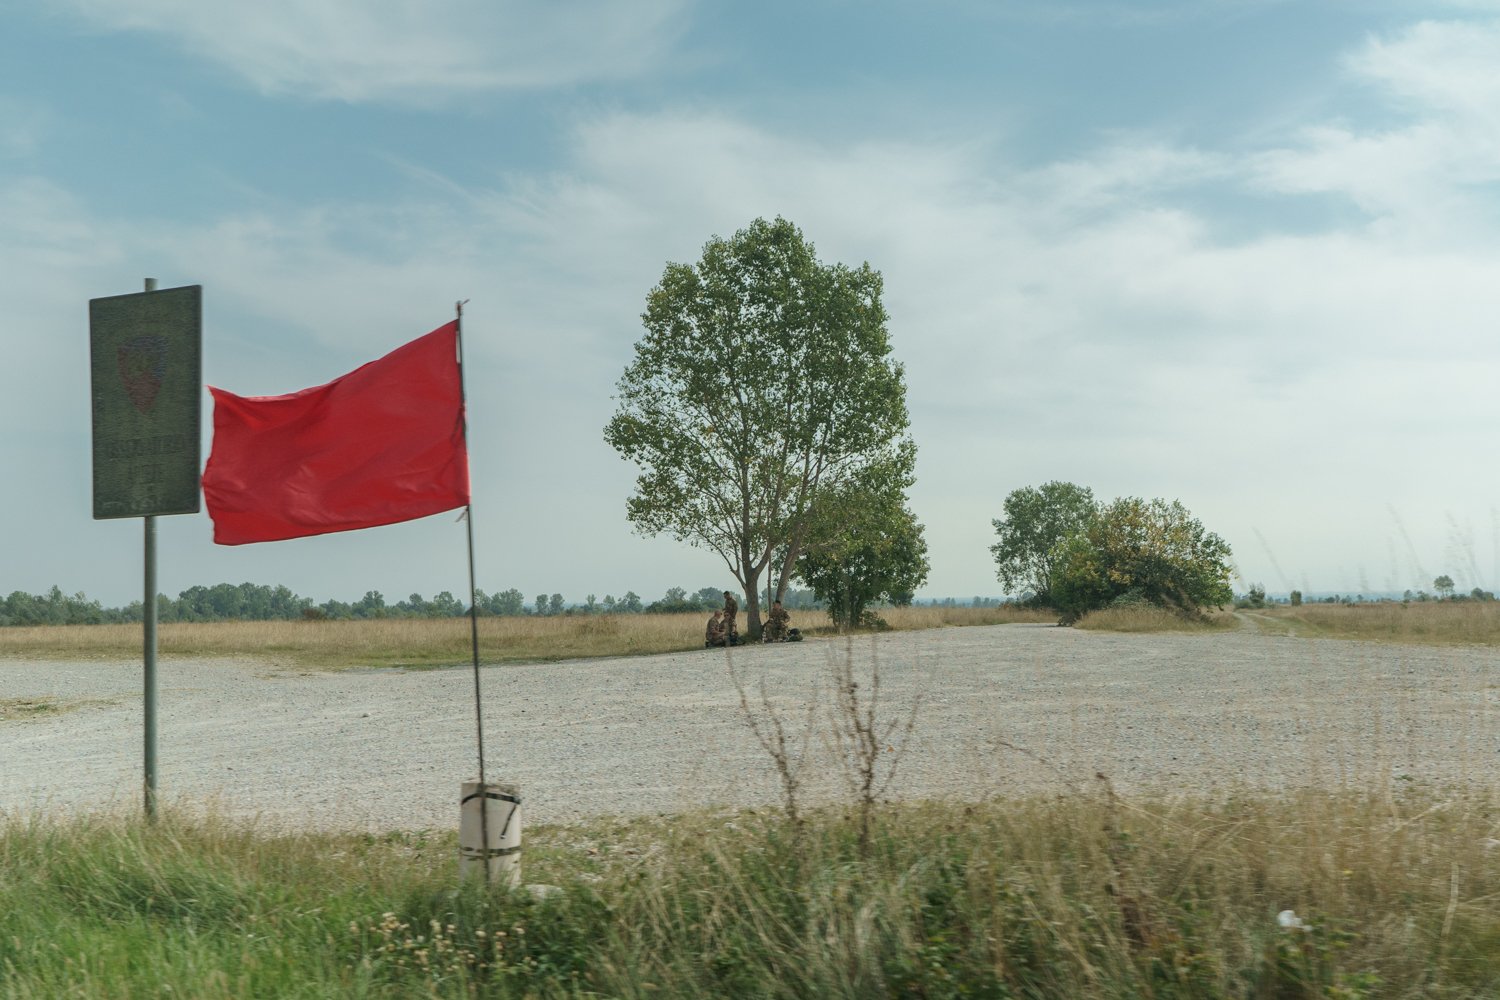  Esercitazioni in corso nel poligono Cellina-Meduna, segnalate all'ingresso del SIC Magredi da bandiere rosse. Vivaro (Pordenone), 2023. 